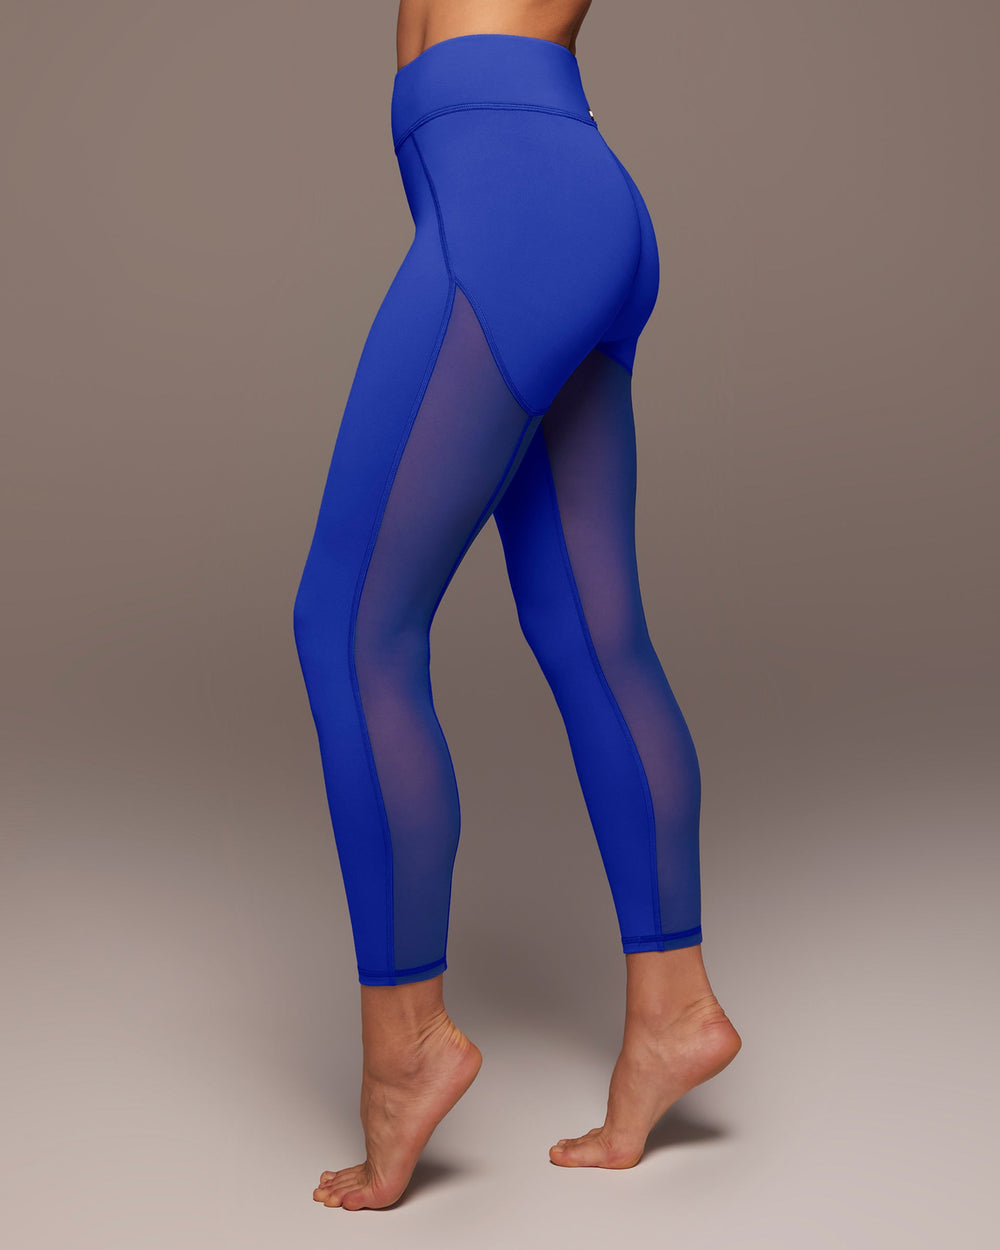 lululemon blue mesh leggings - Hers 2